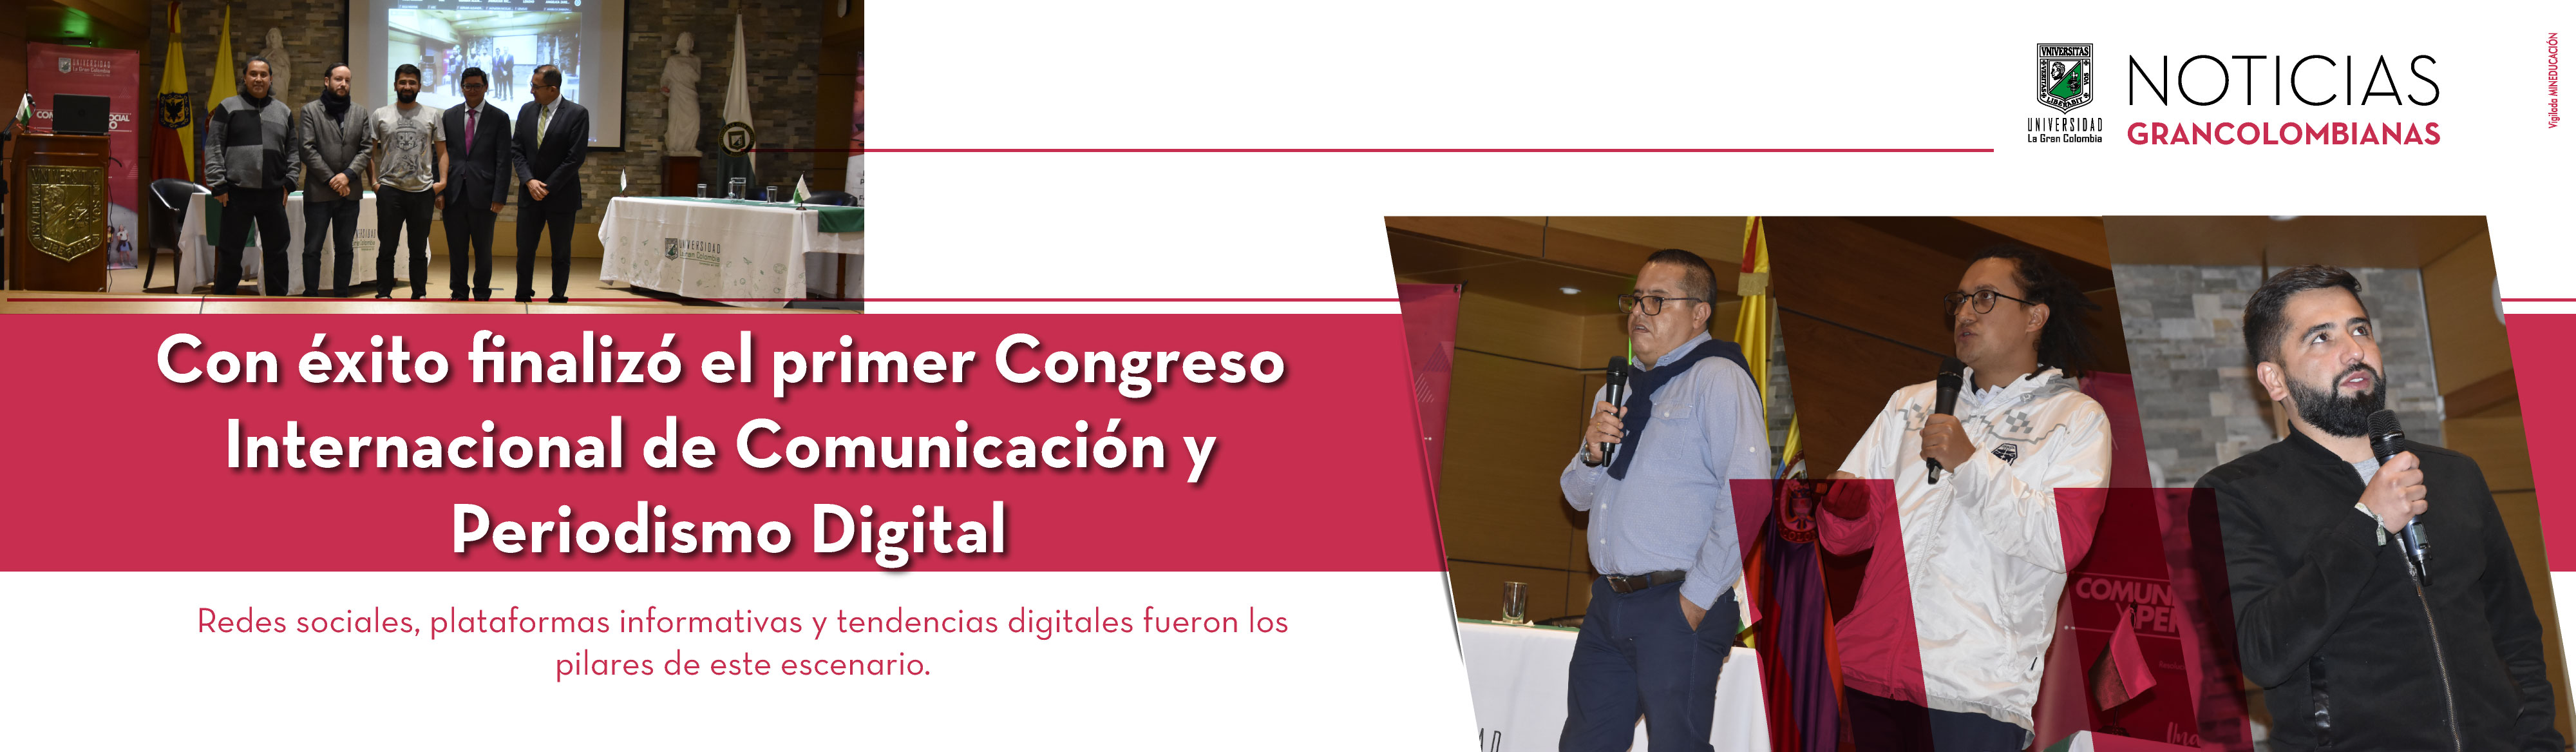 Con éxito finalizó el primer Congreso Internacional de Comunicación y Periodismo Digital